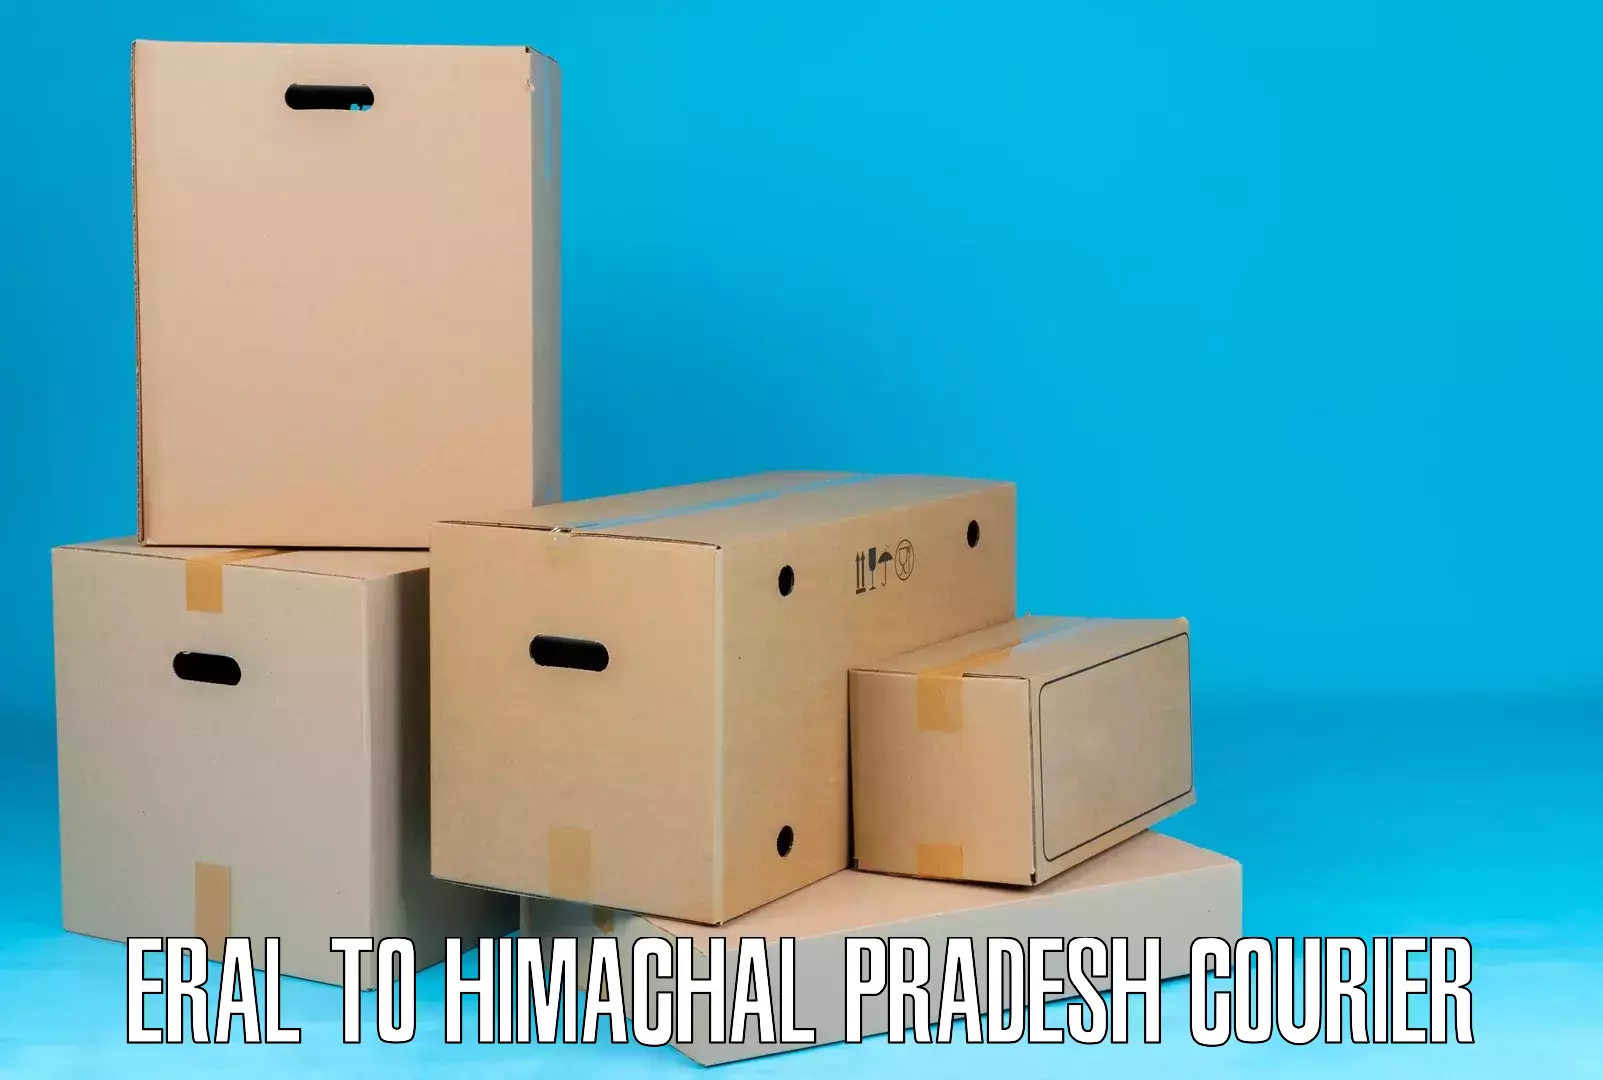 Efficient parcel delivery Eral to Sundar Nagar